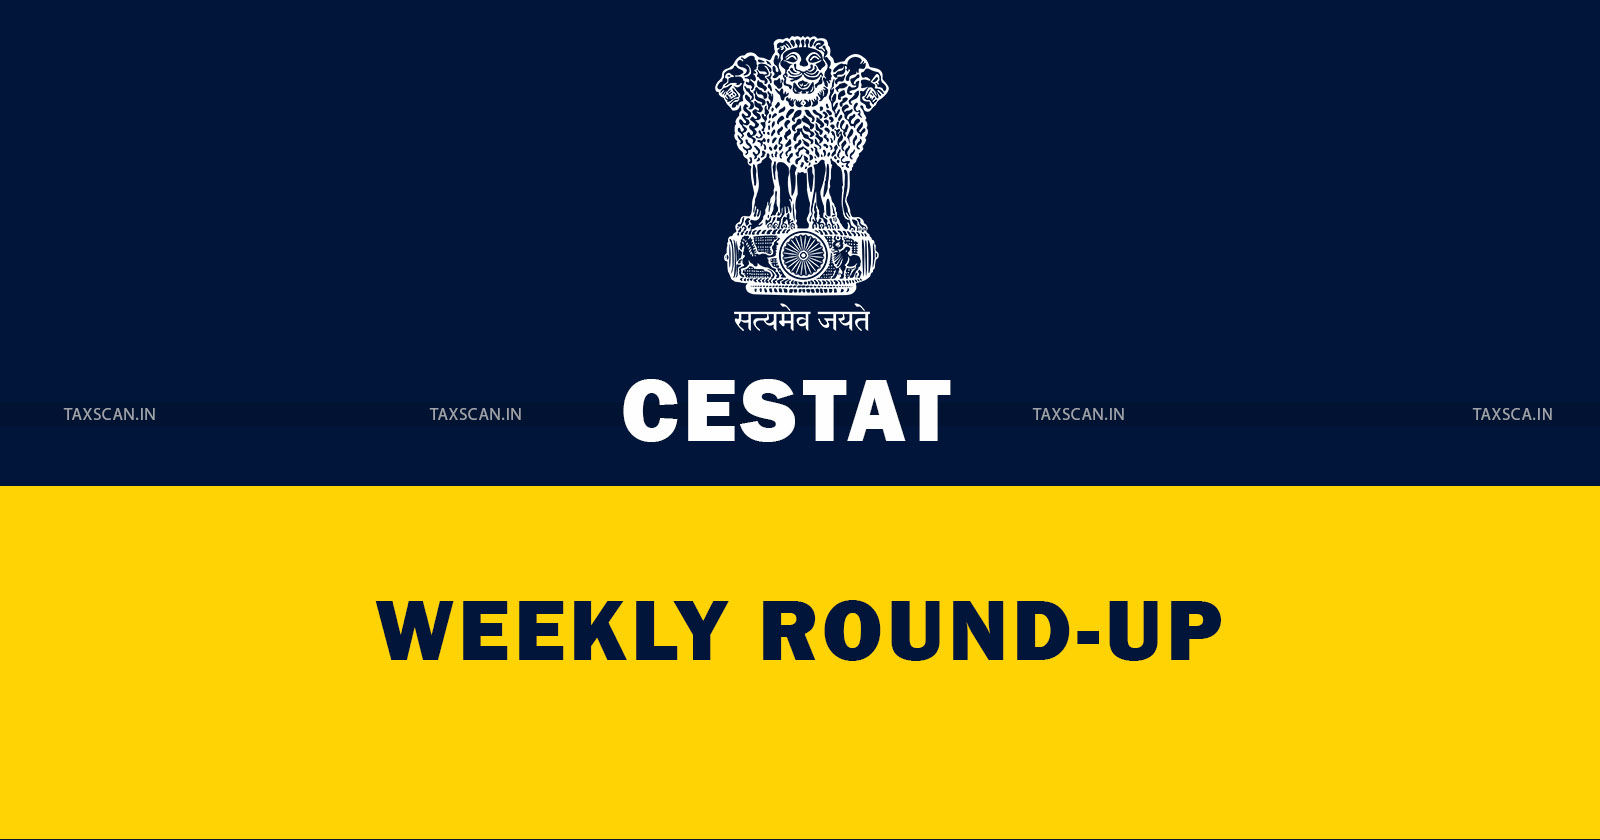 CESTAT Weekly Round-Up - CESTAT - Weekly Round-Up - taxscan